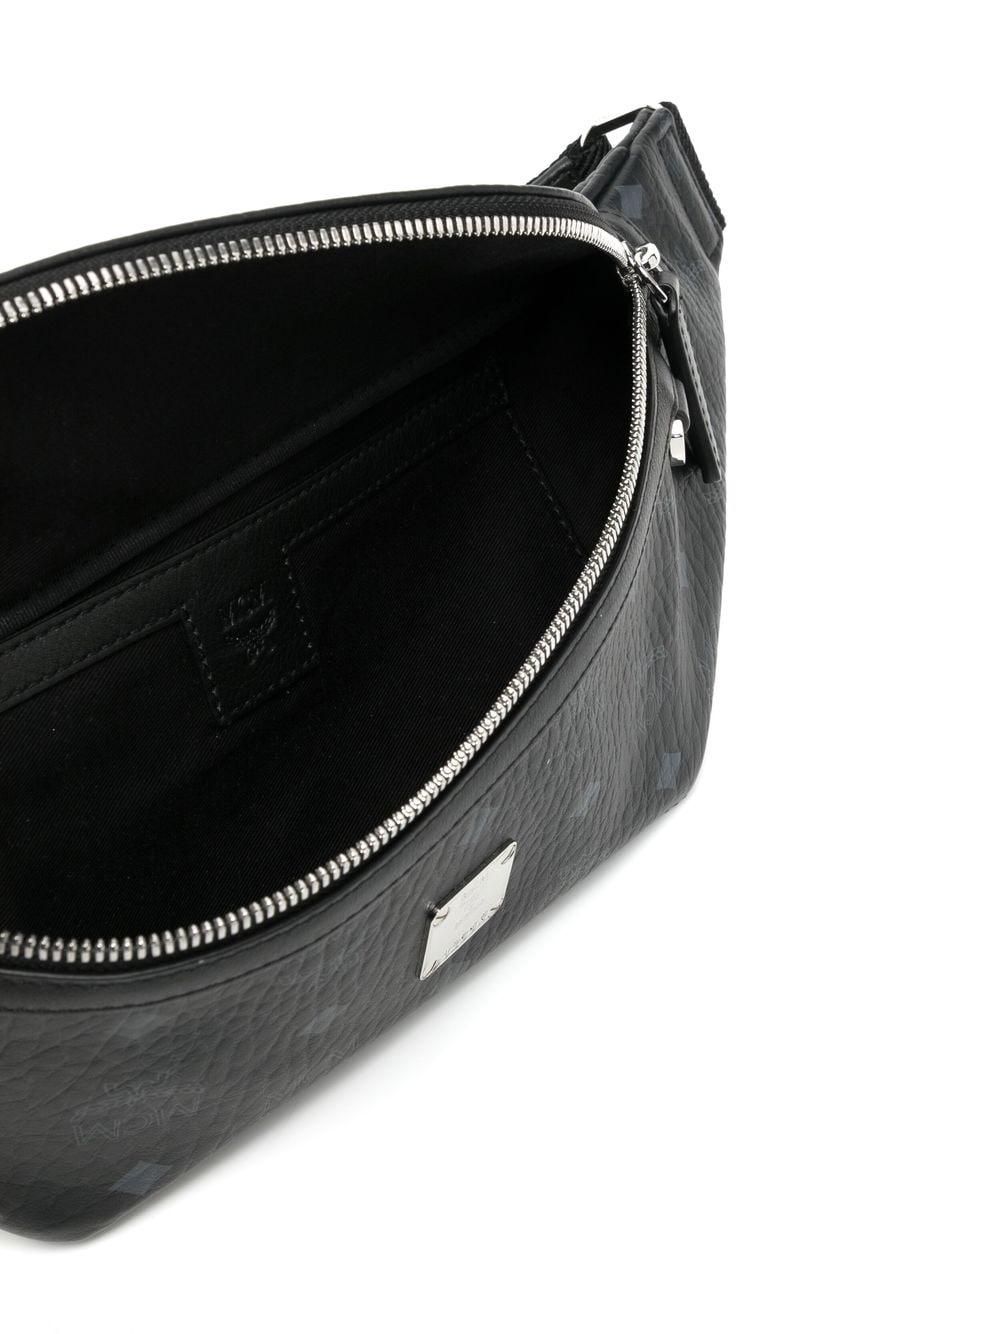 MCM Fursten Belt Bag Visetos Med Black in Coated Canvas with Silver-tone -  US